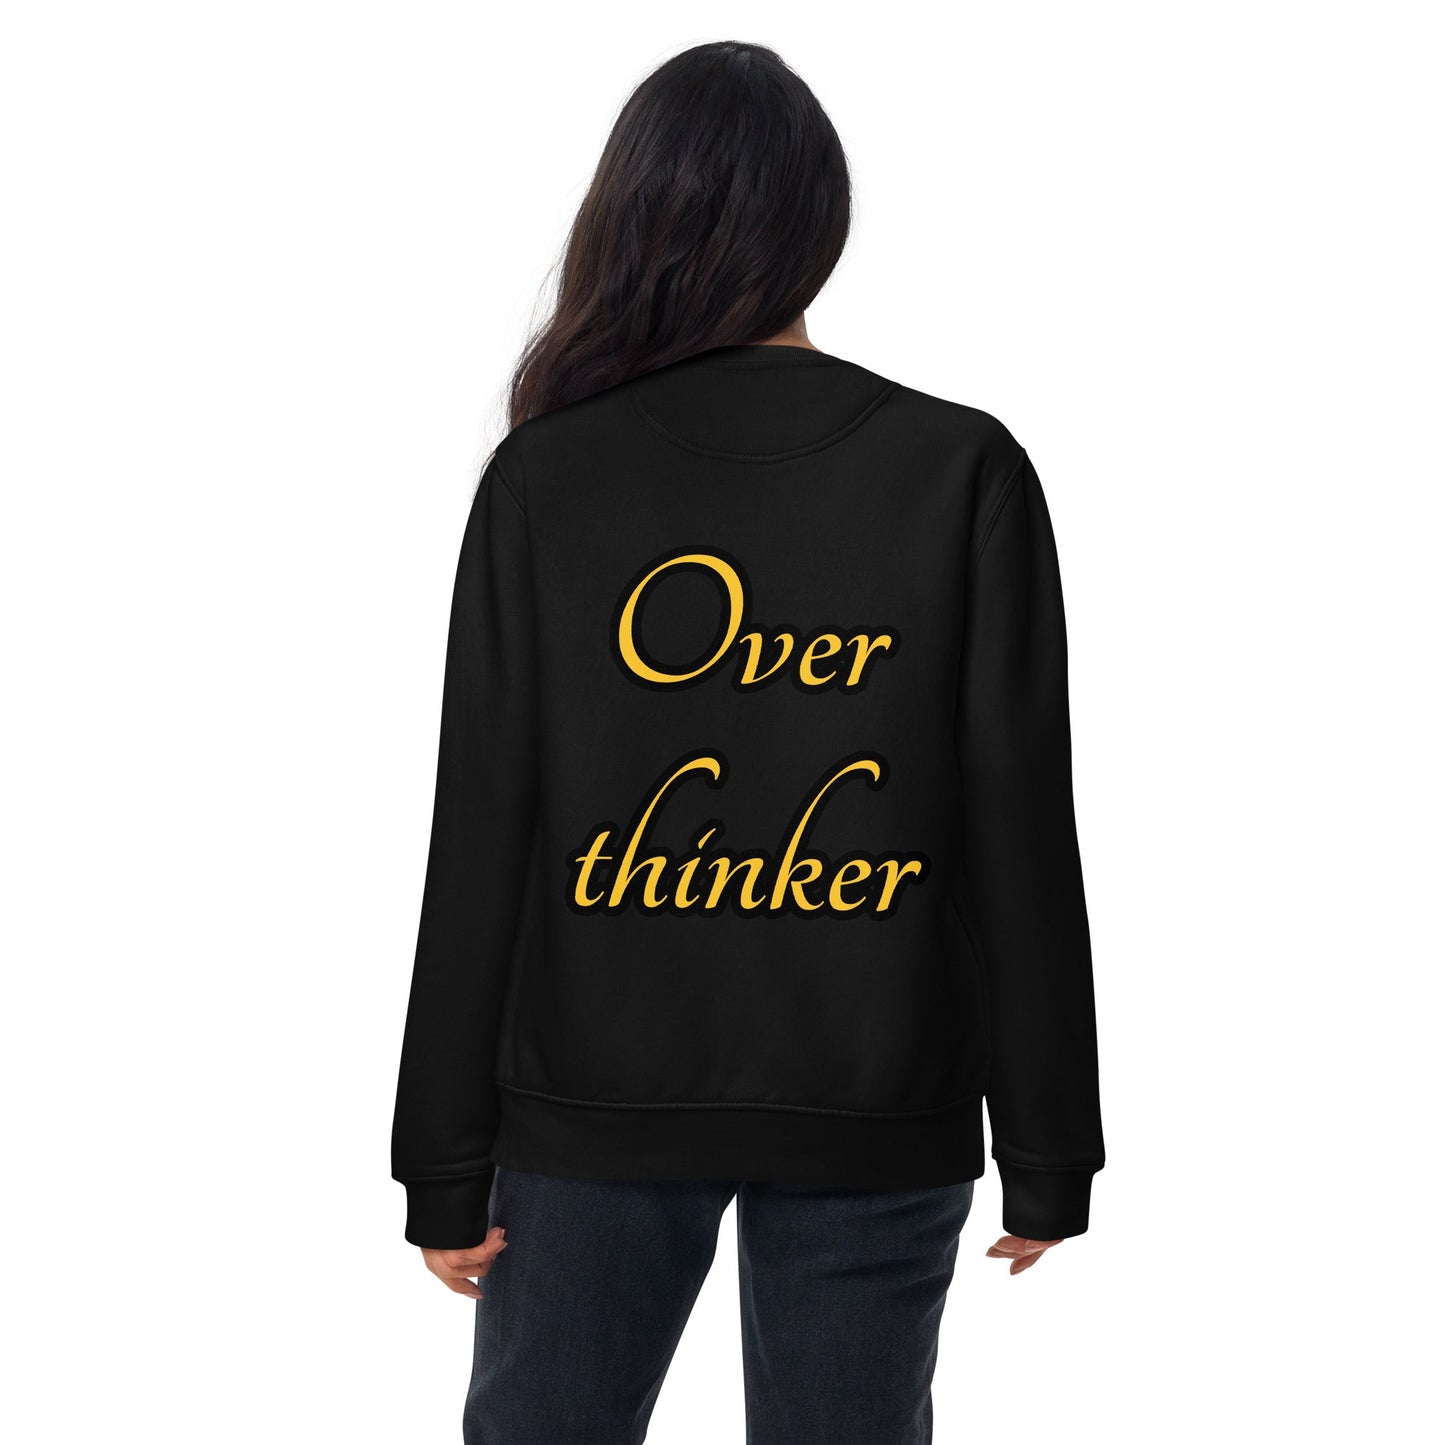 Overthinker Unisex Premium Sweatshirt - Weirdly Sensational